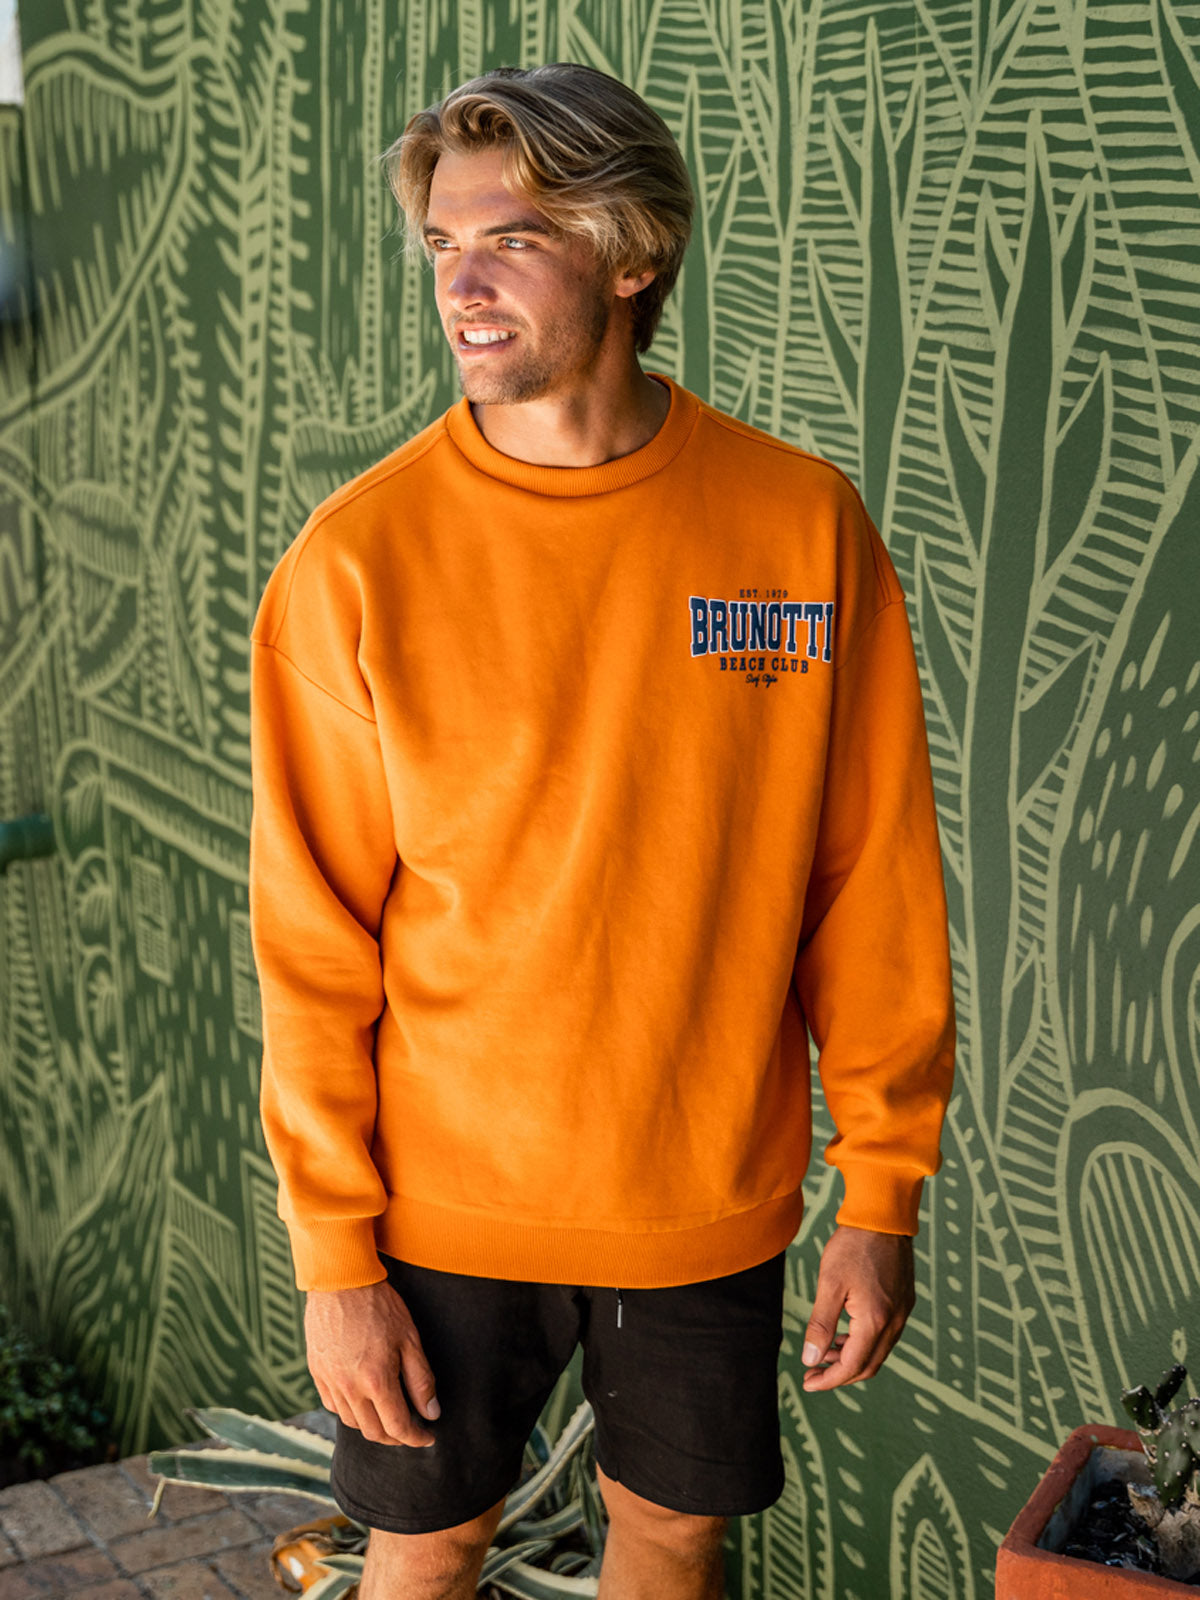 Sunir-R Heren Sweater | Oranje